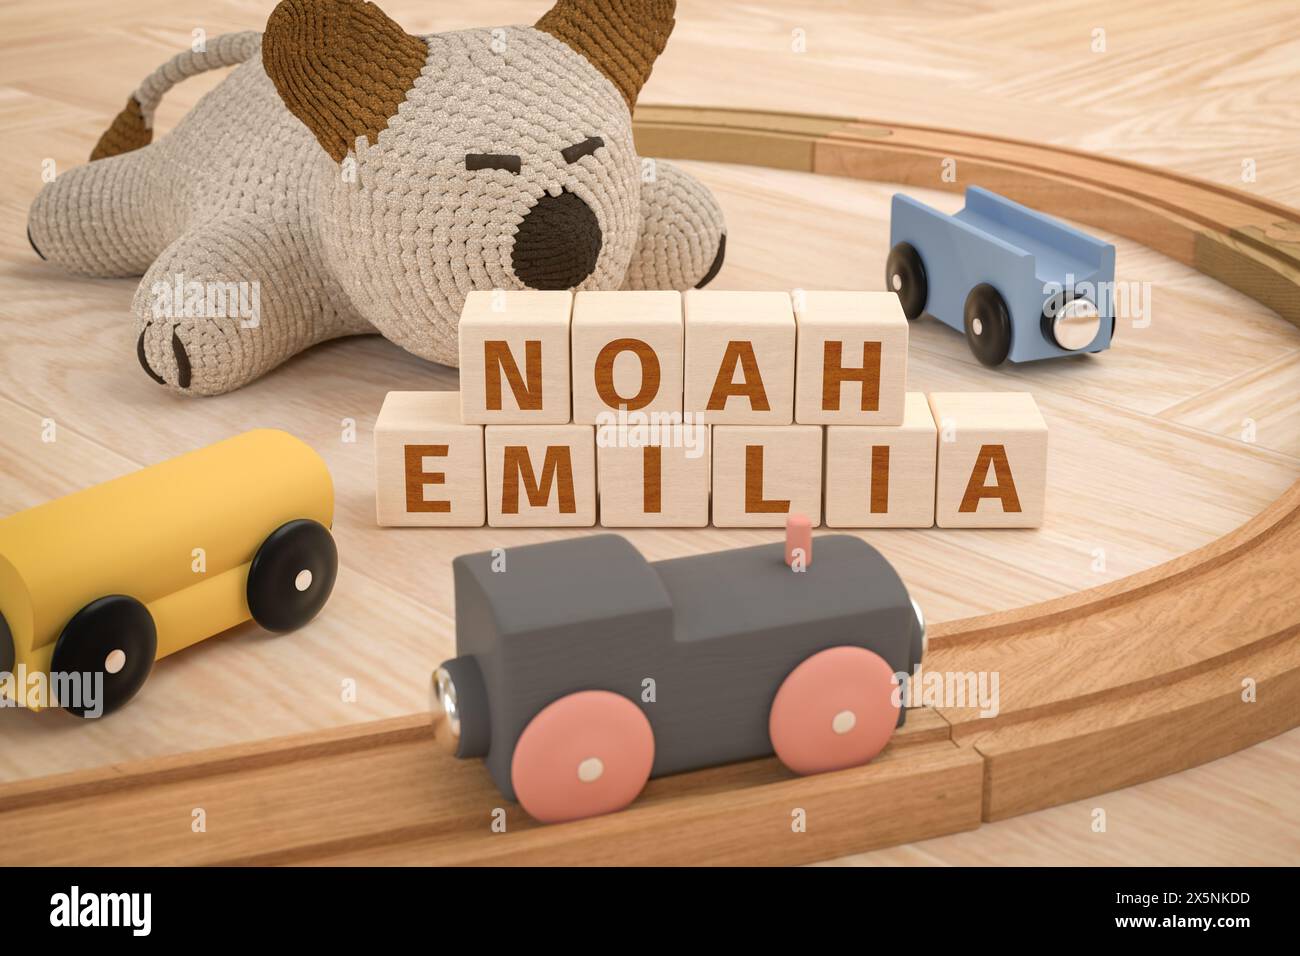 Die beliebtesten Vornamen für Babys in Deutschland waren 2022 und 2023 Noah für Jungen und Emilia für Mädchen: Die Namen wurden mit Holzwürfeln dazwischen geschrieben Stockfoto